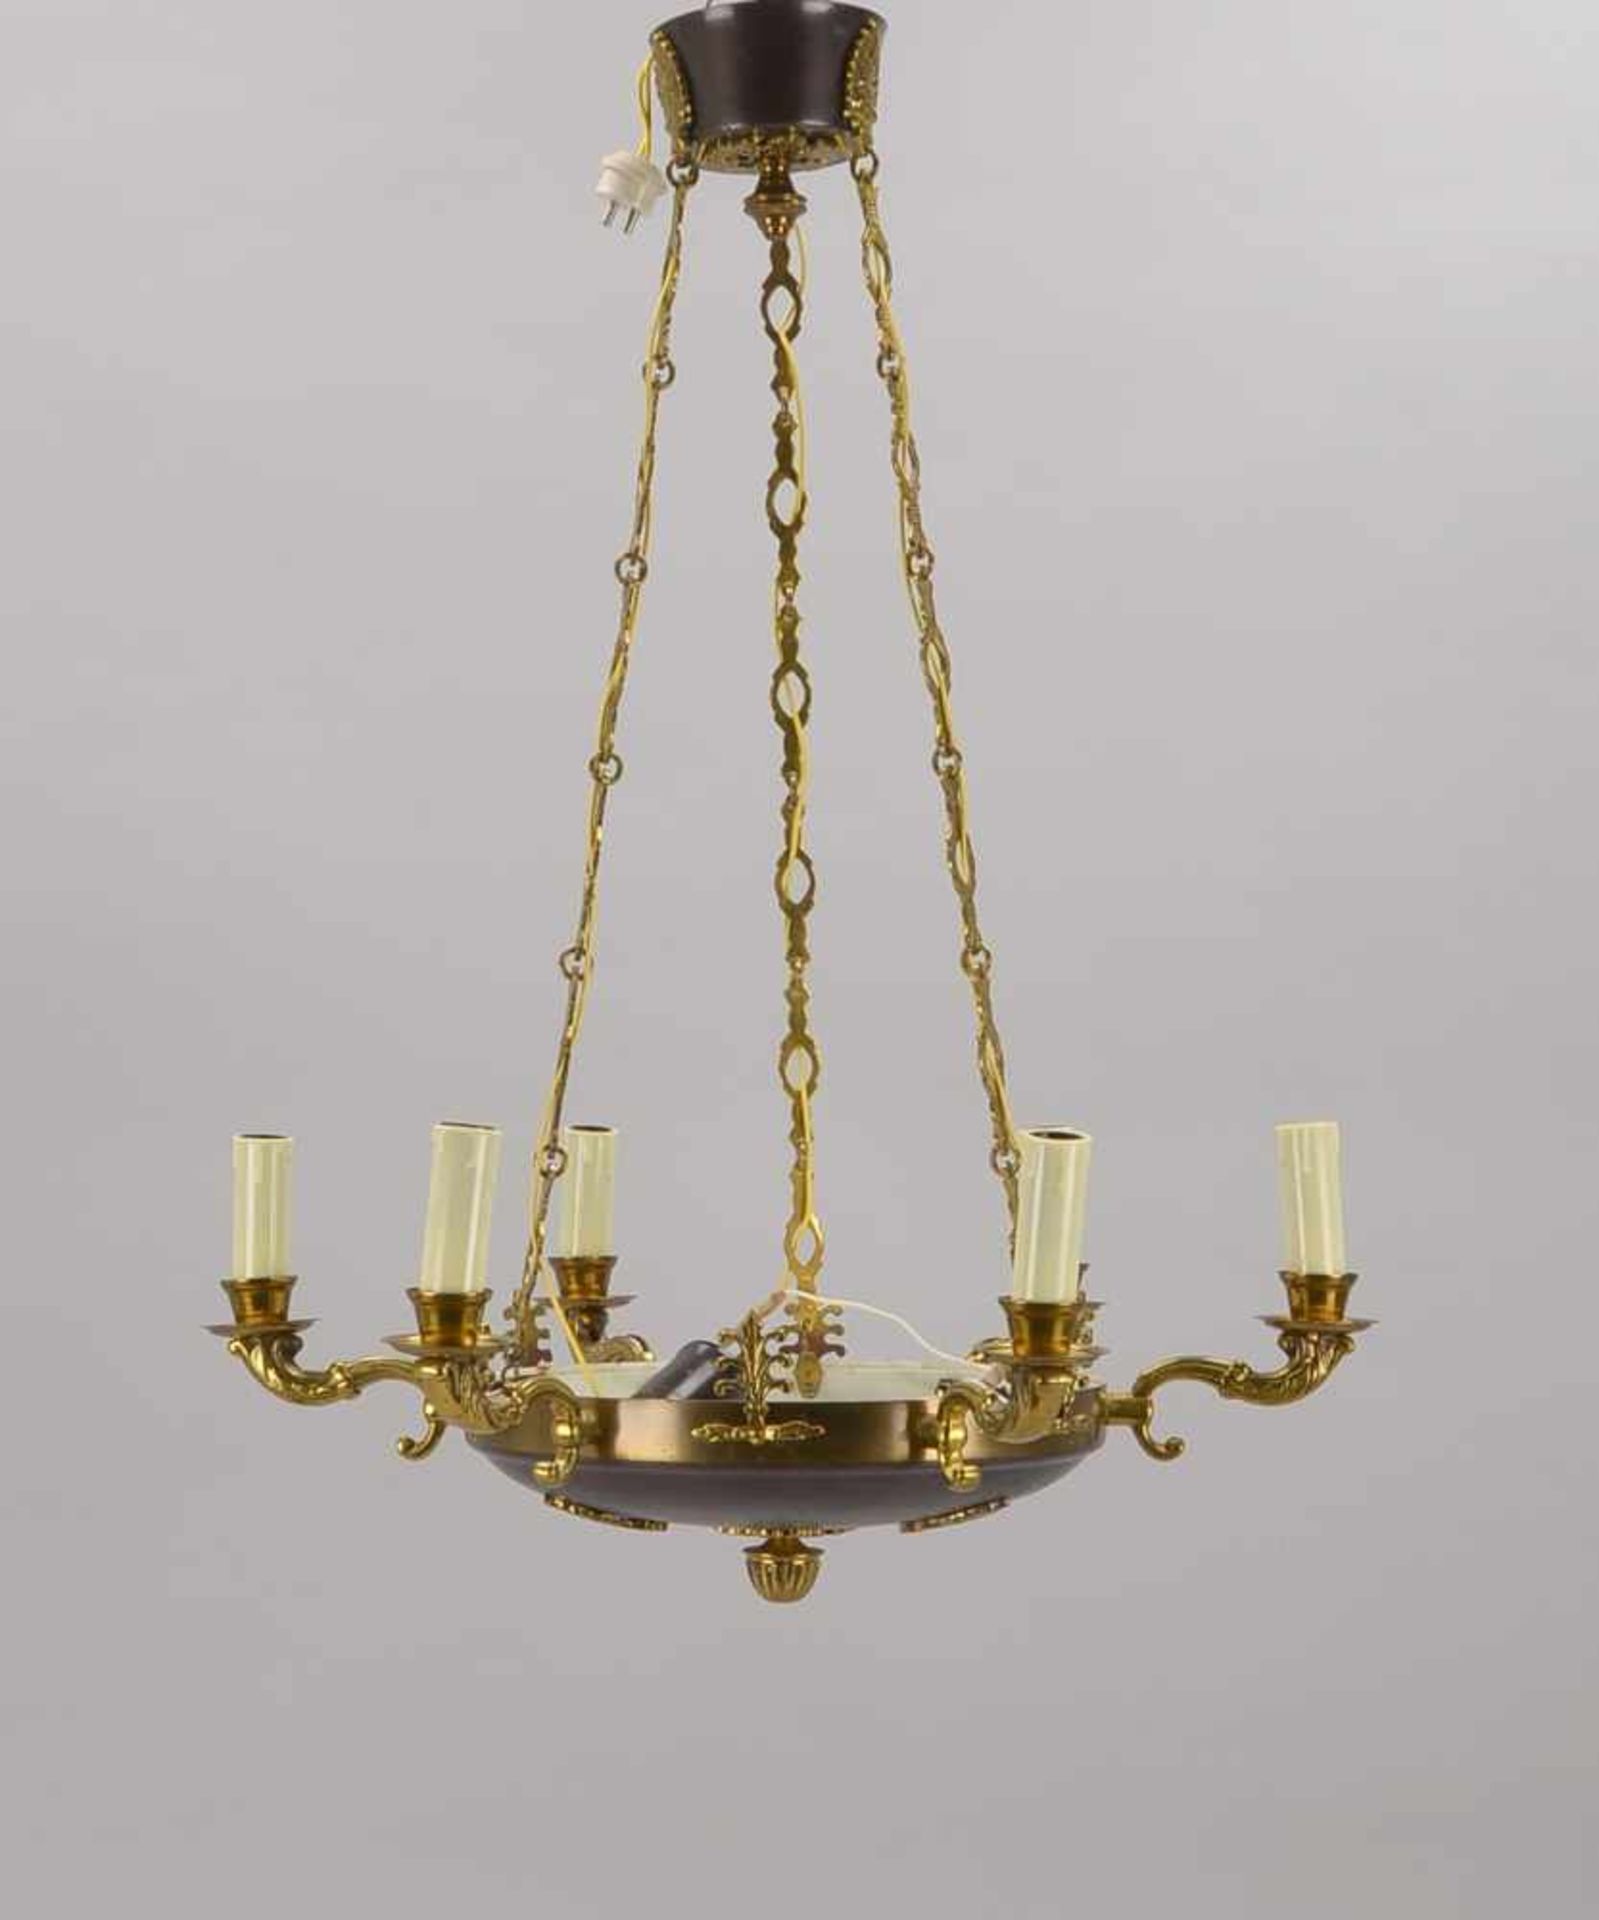 Deckenlampe, Empire-Stil, 7-flammmig und 6-armig; Höhe 65 cm, Durchmesser Ø 55 cm